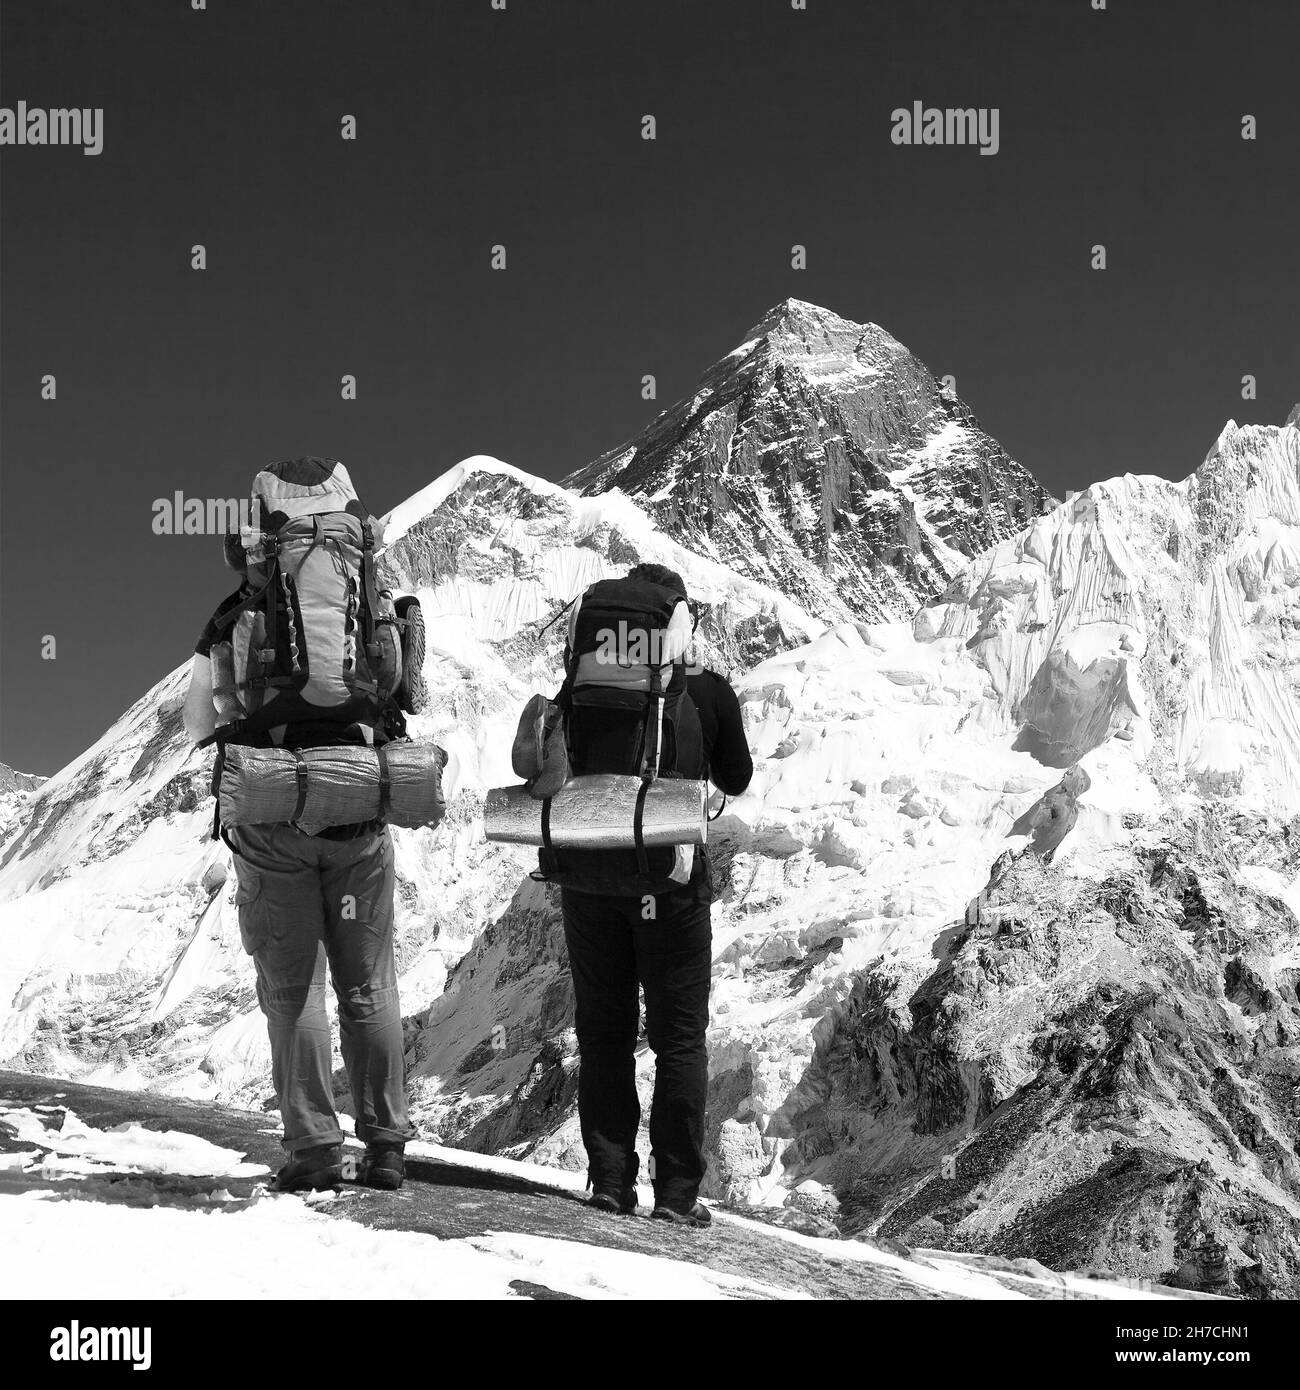 Vue panoramique sur l'Everest depuis Kala Patthar avec deux touristes en route vers le camp de base de l'Everest, parc national de Sagarmatha, vallée de Khumbu, Népal, b Banque D'Images